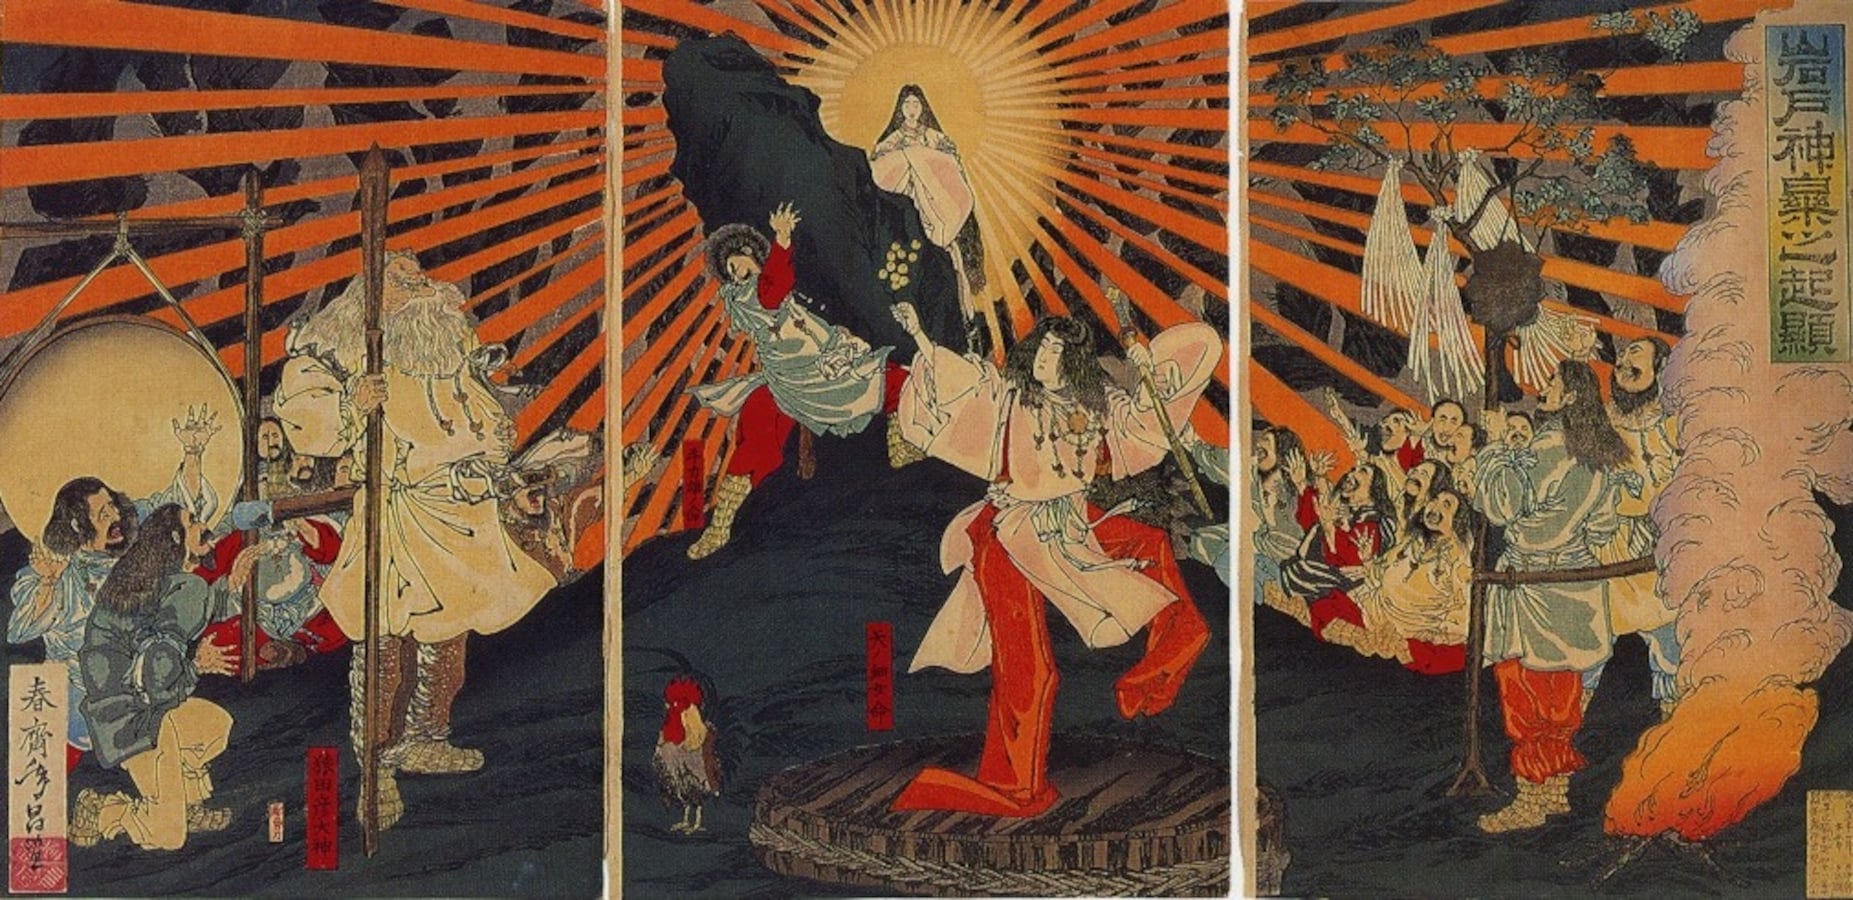 kami japanese mythology